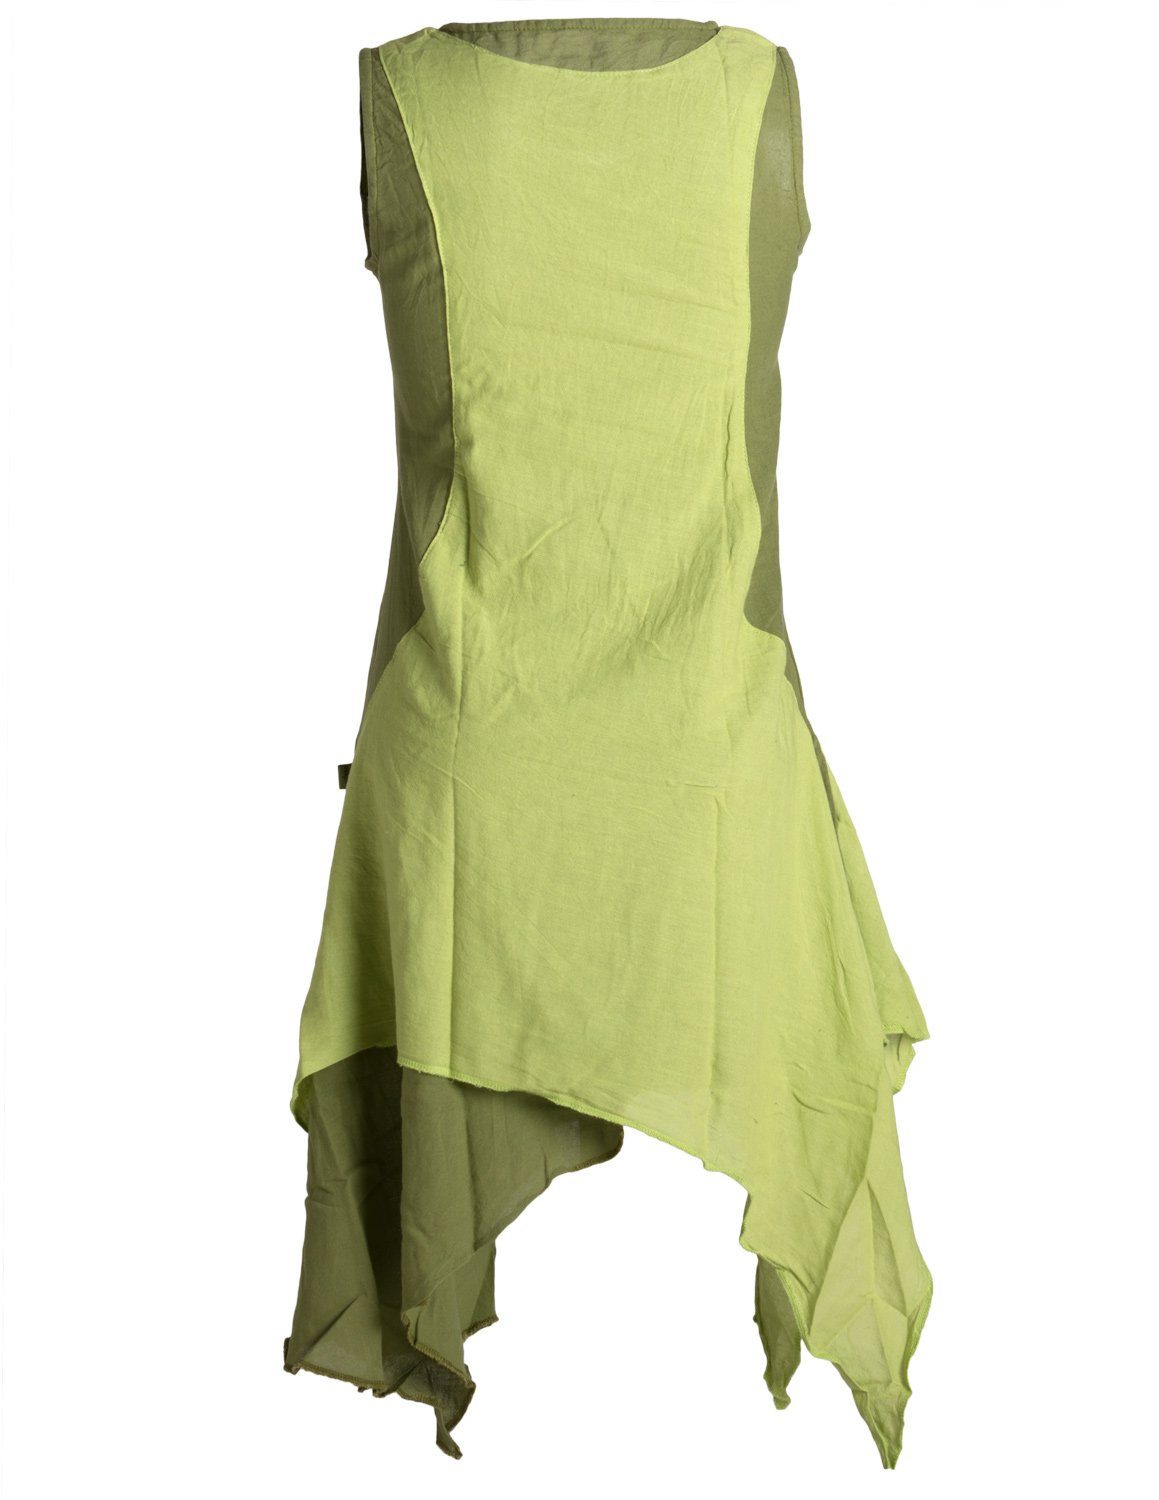 Vishes Sommerkleid Lagenlook Boho, handgewebte Ärmelloses Goa, olive-hellgrün Kleid Baumwolle Style Hippie